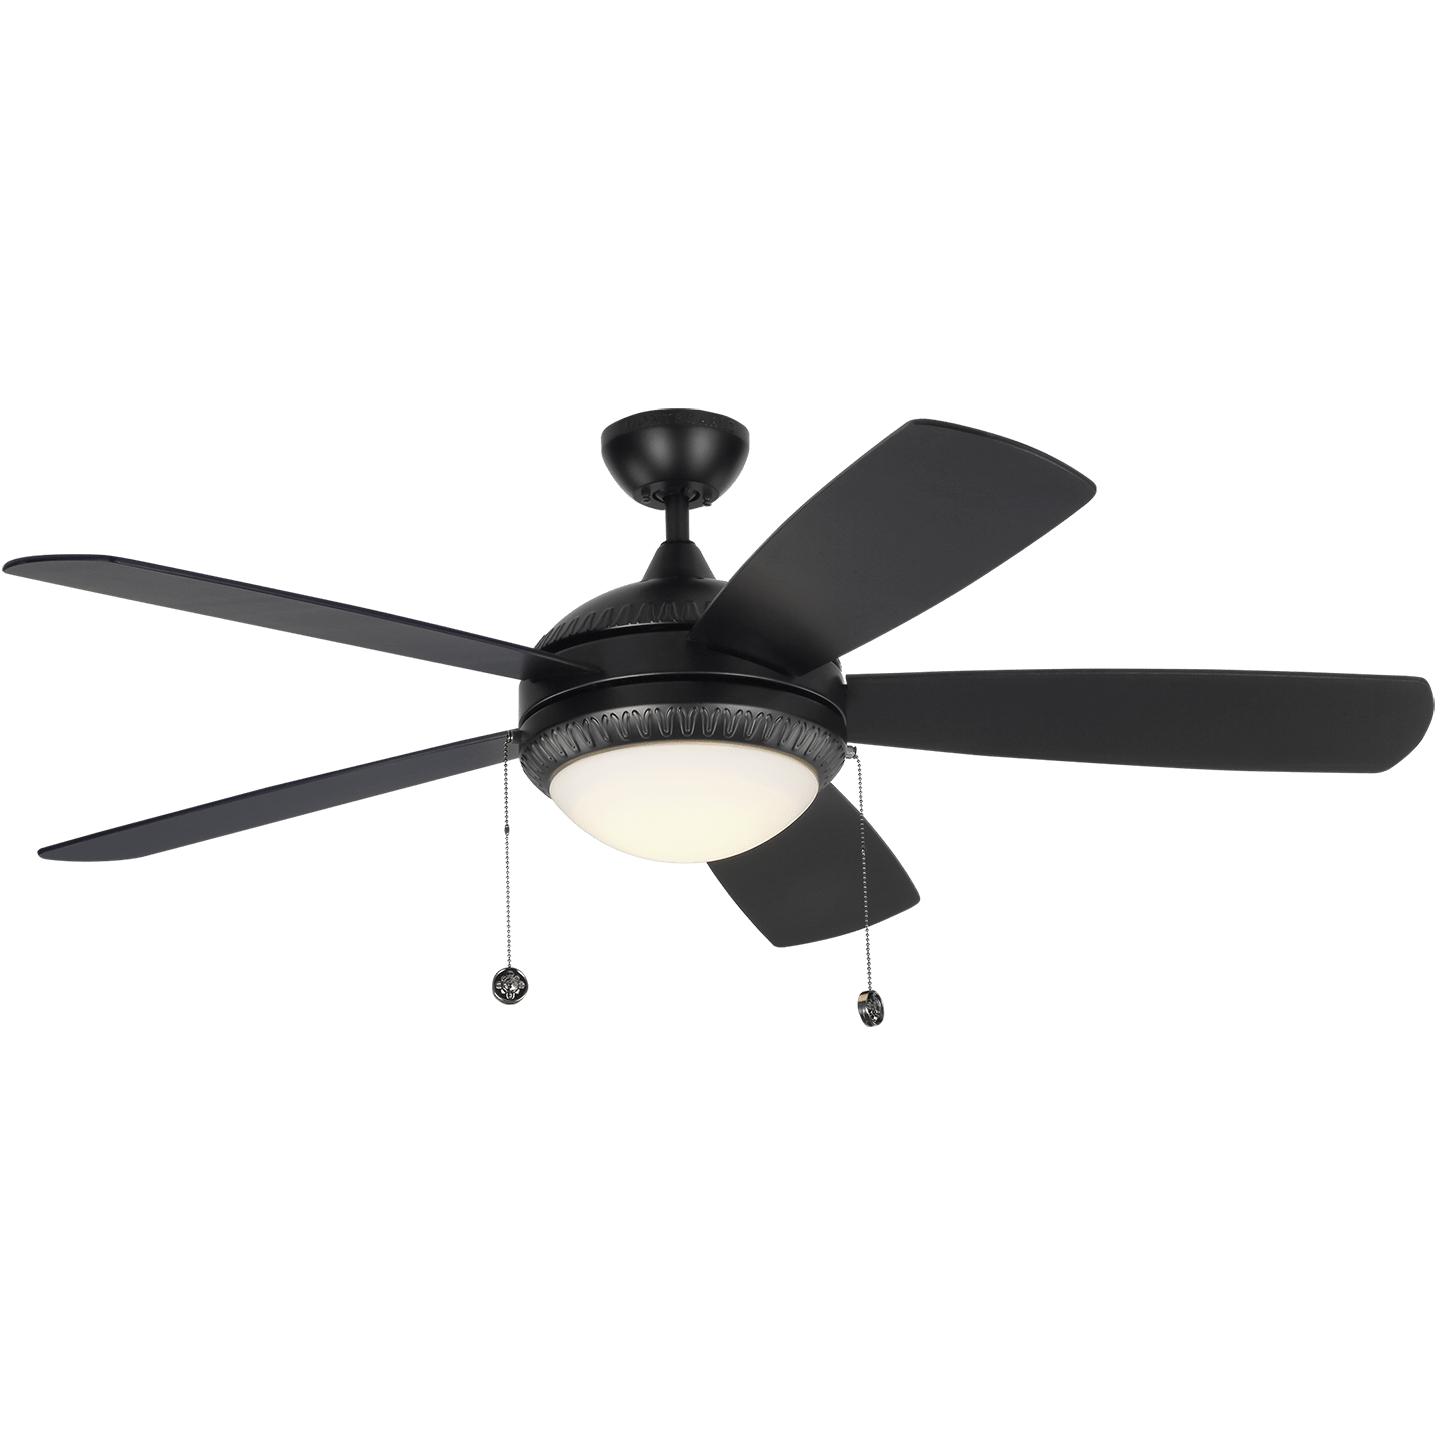 Купить Потолочный вентилятор Discus Ornate 52" LED Ceiling Fan в интернет-магазине roooms.ru